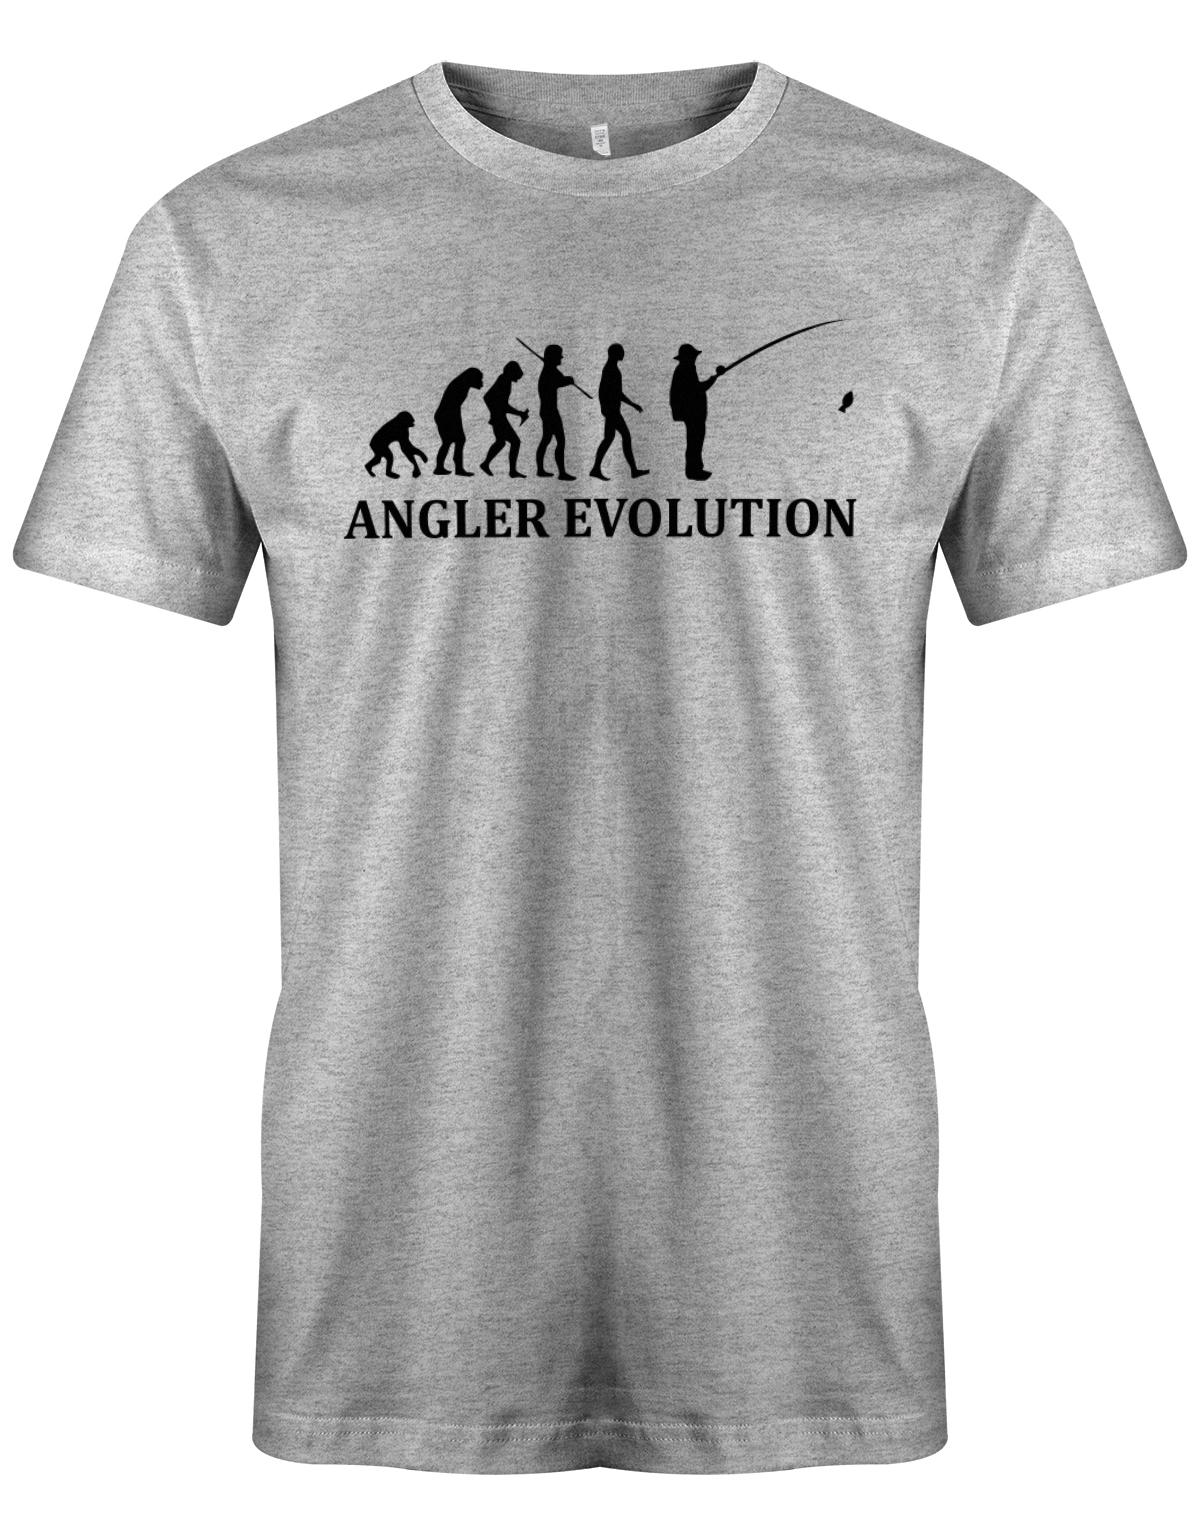 Angler-Evolution-Herren-Shirt-Grau